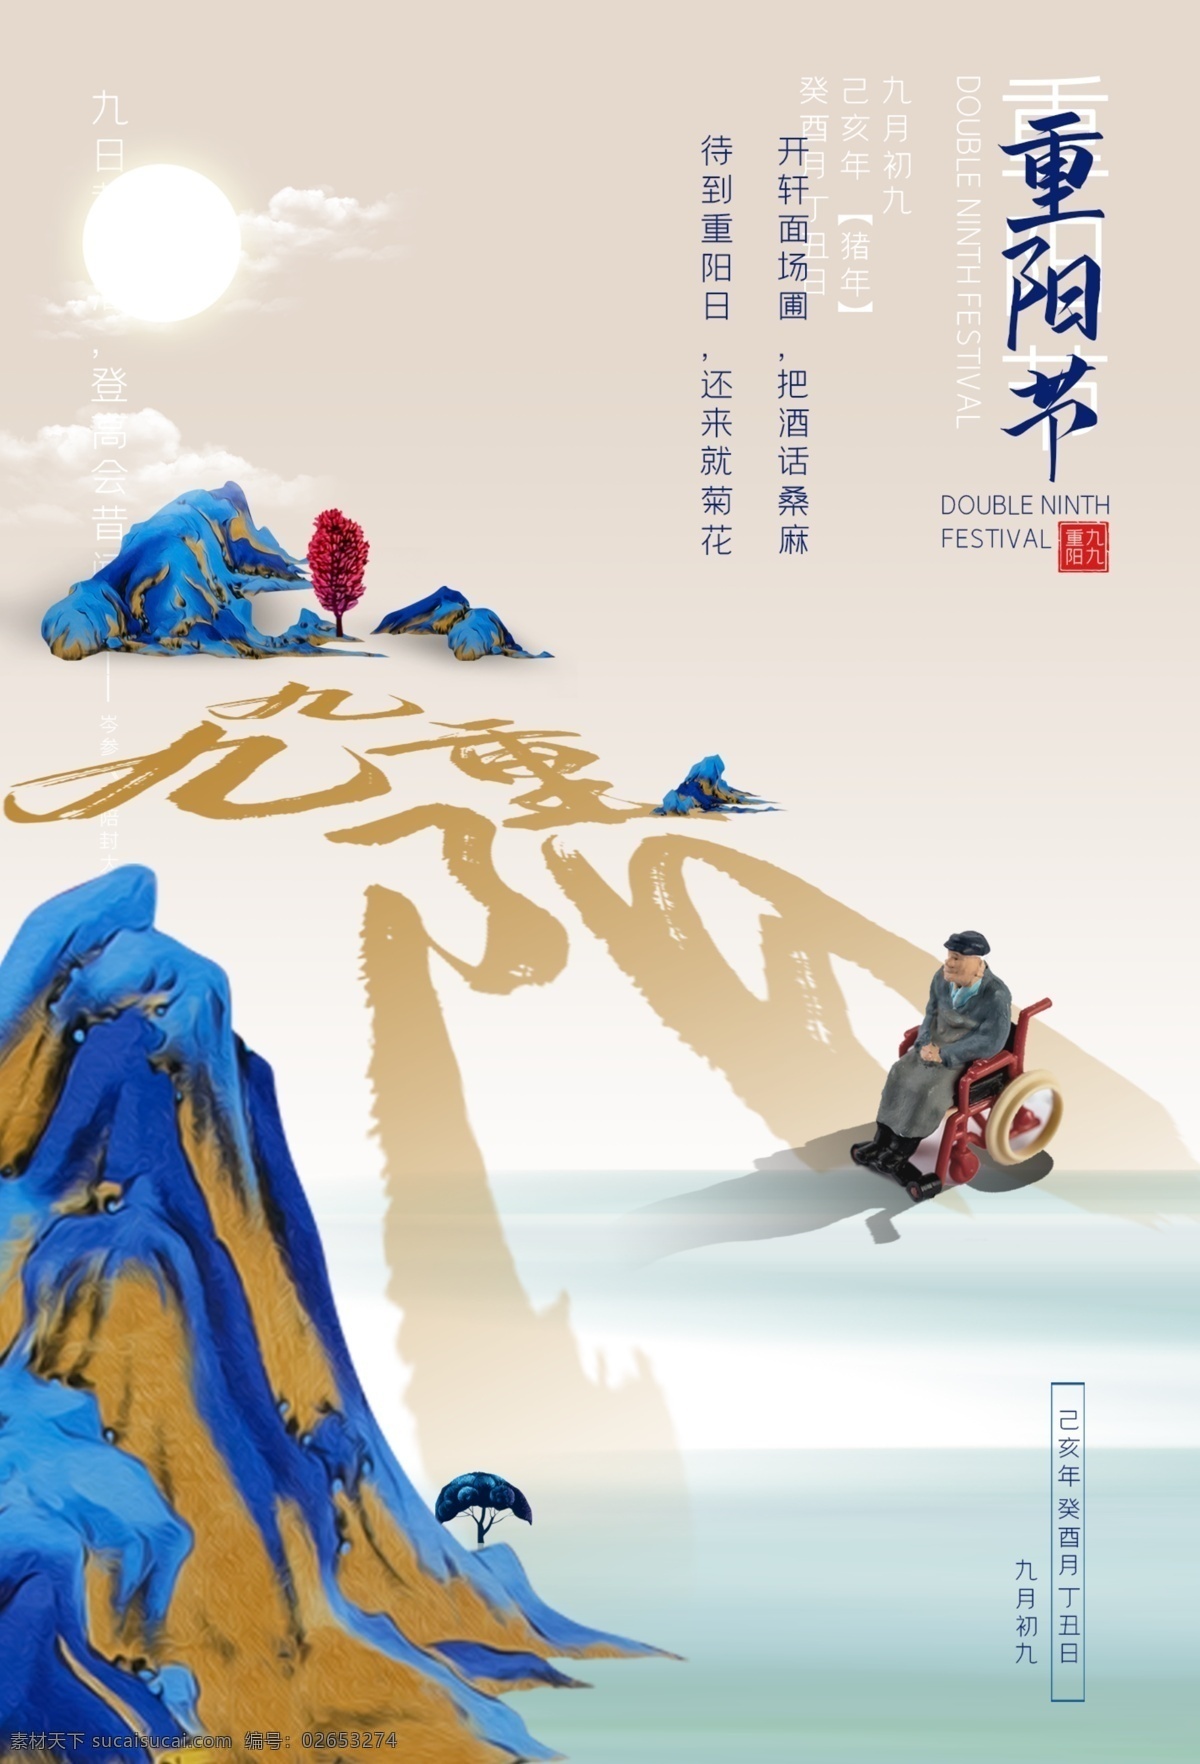 重阳节 节日 活动 宣传海报 宣传 海报 传统节日